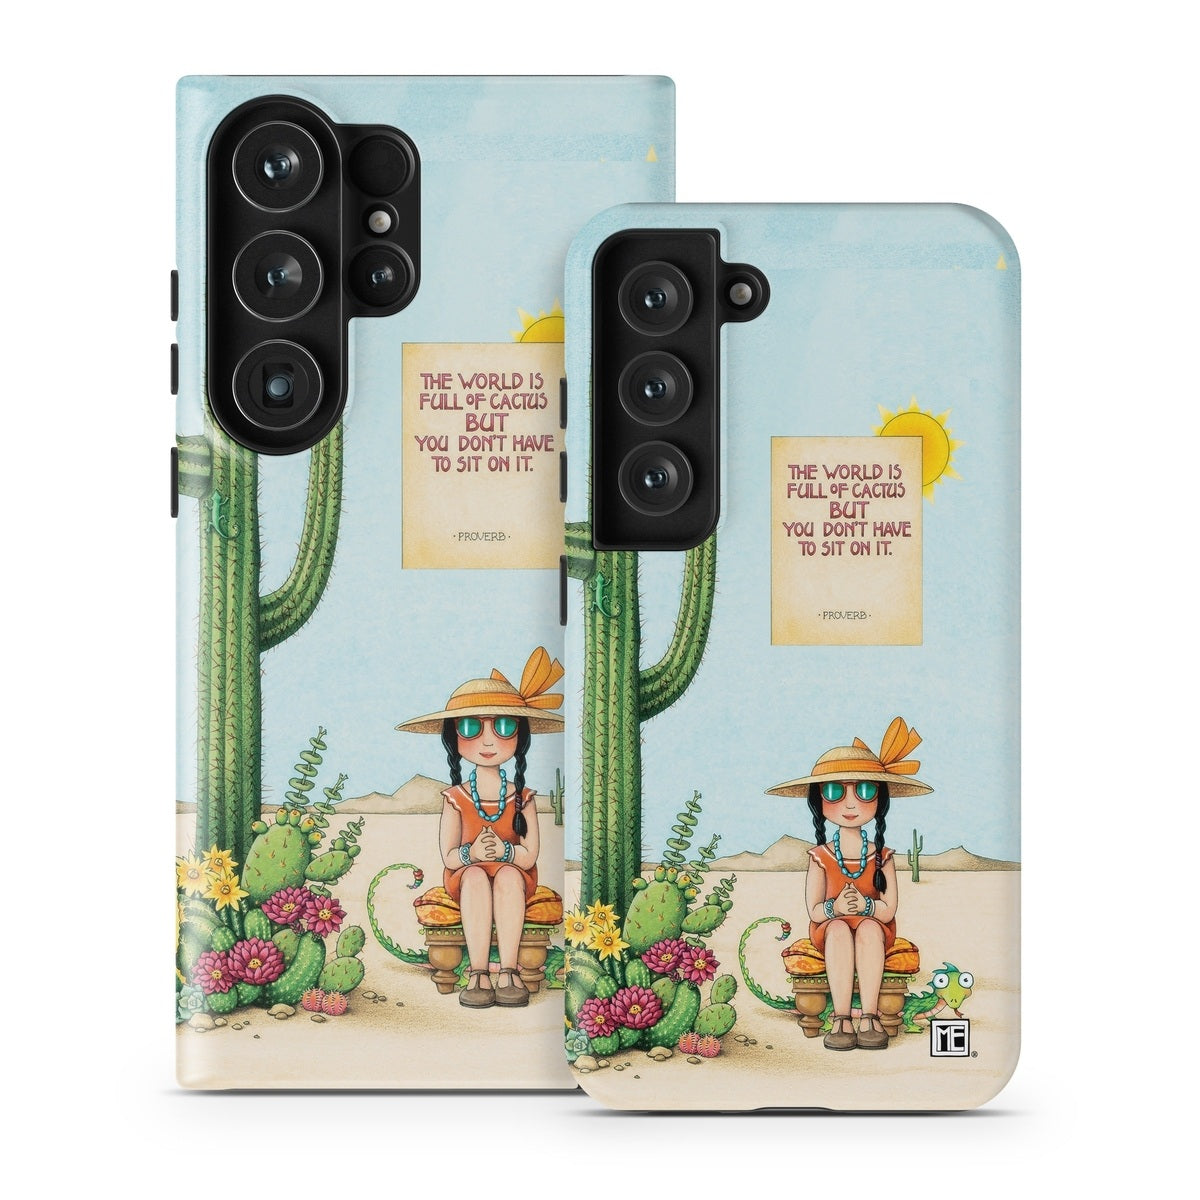 Cactus Phone Cases